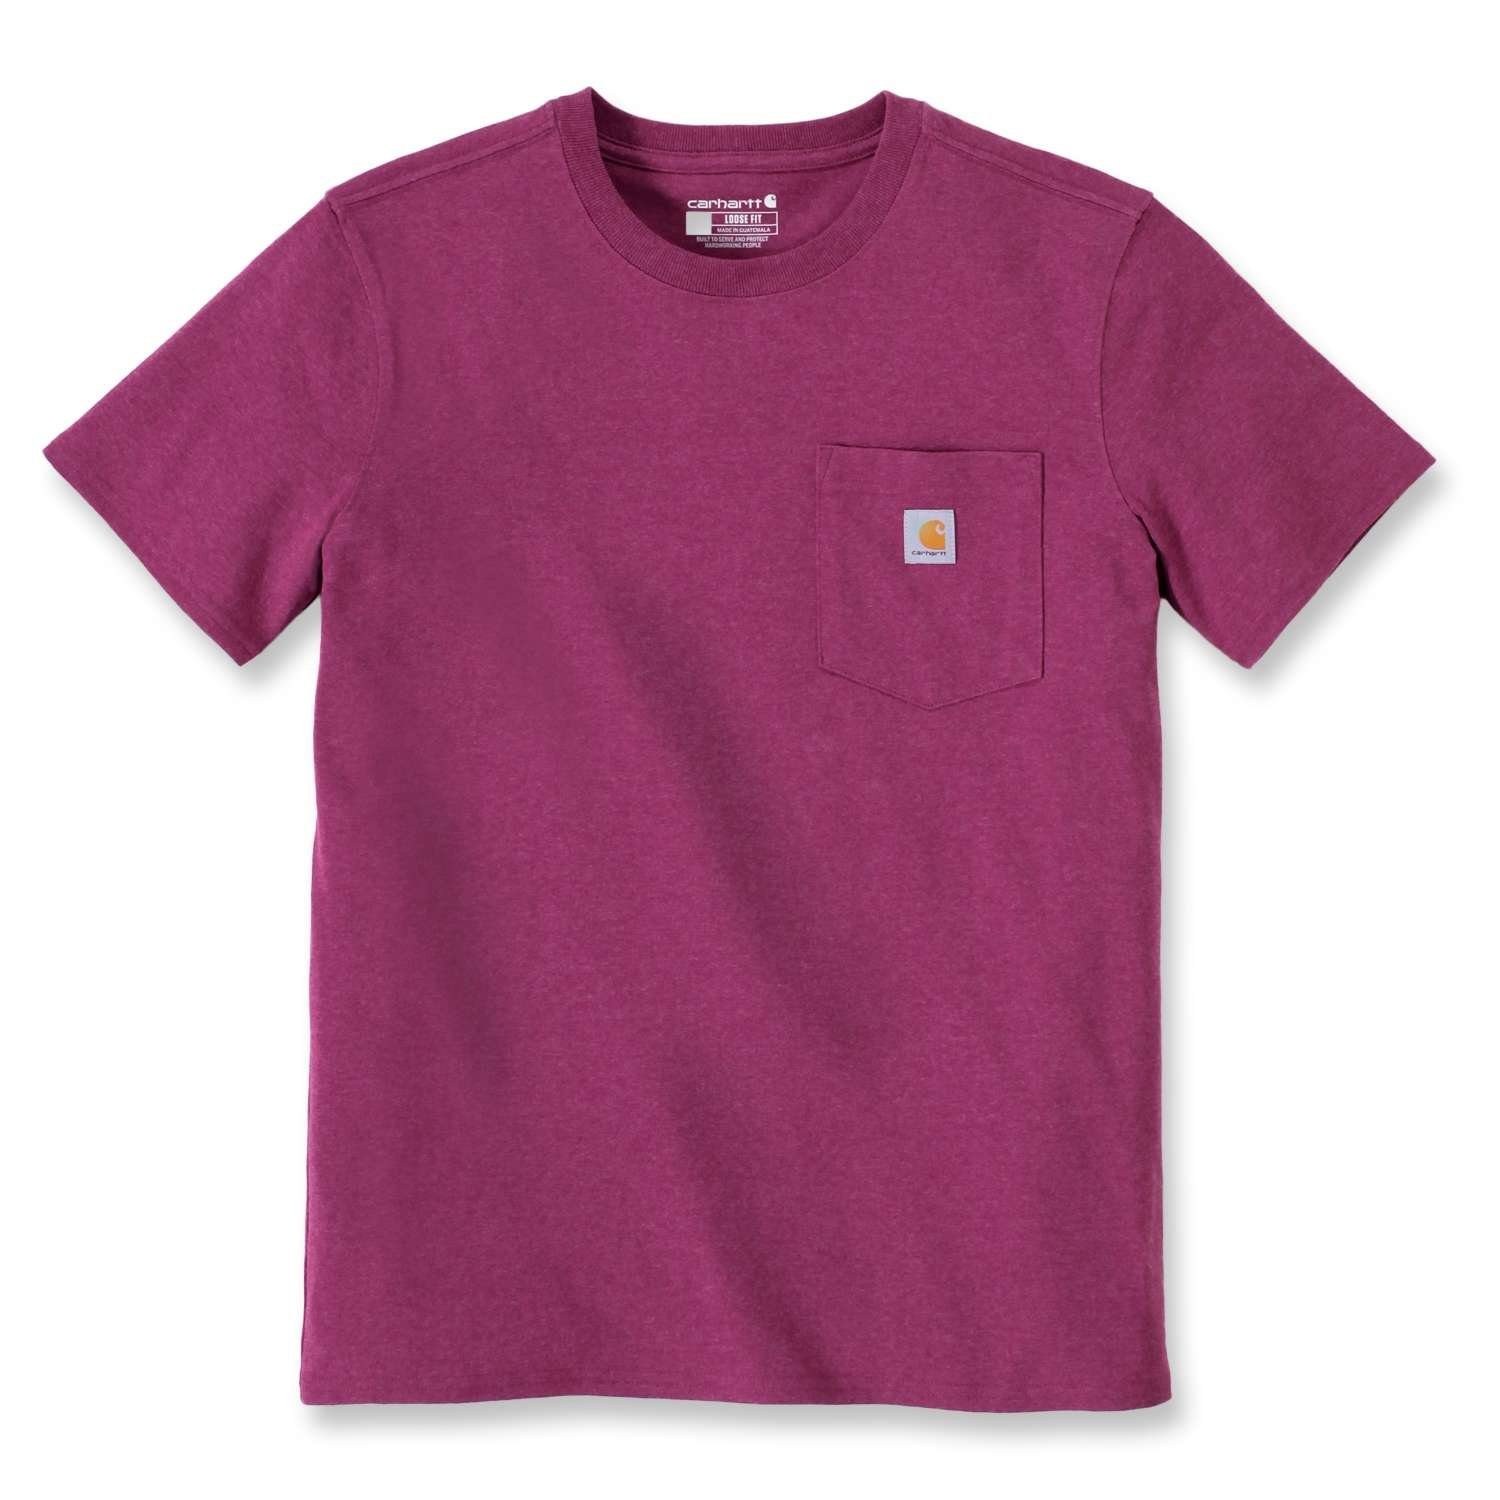 Loose T-Shirt Heavyweight Fit agate magenta Pocket Carhartt Damen Carhartt Adult T-Shirt Short-Sleeve